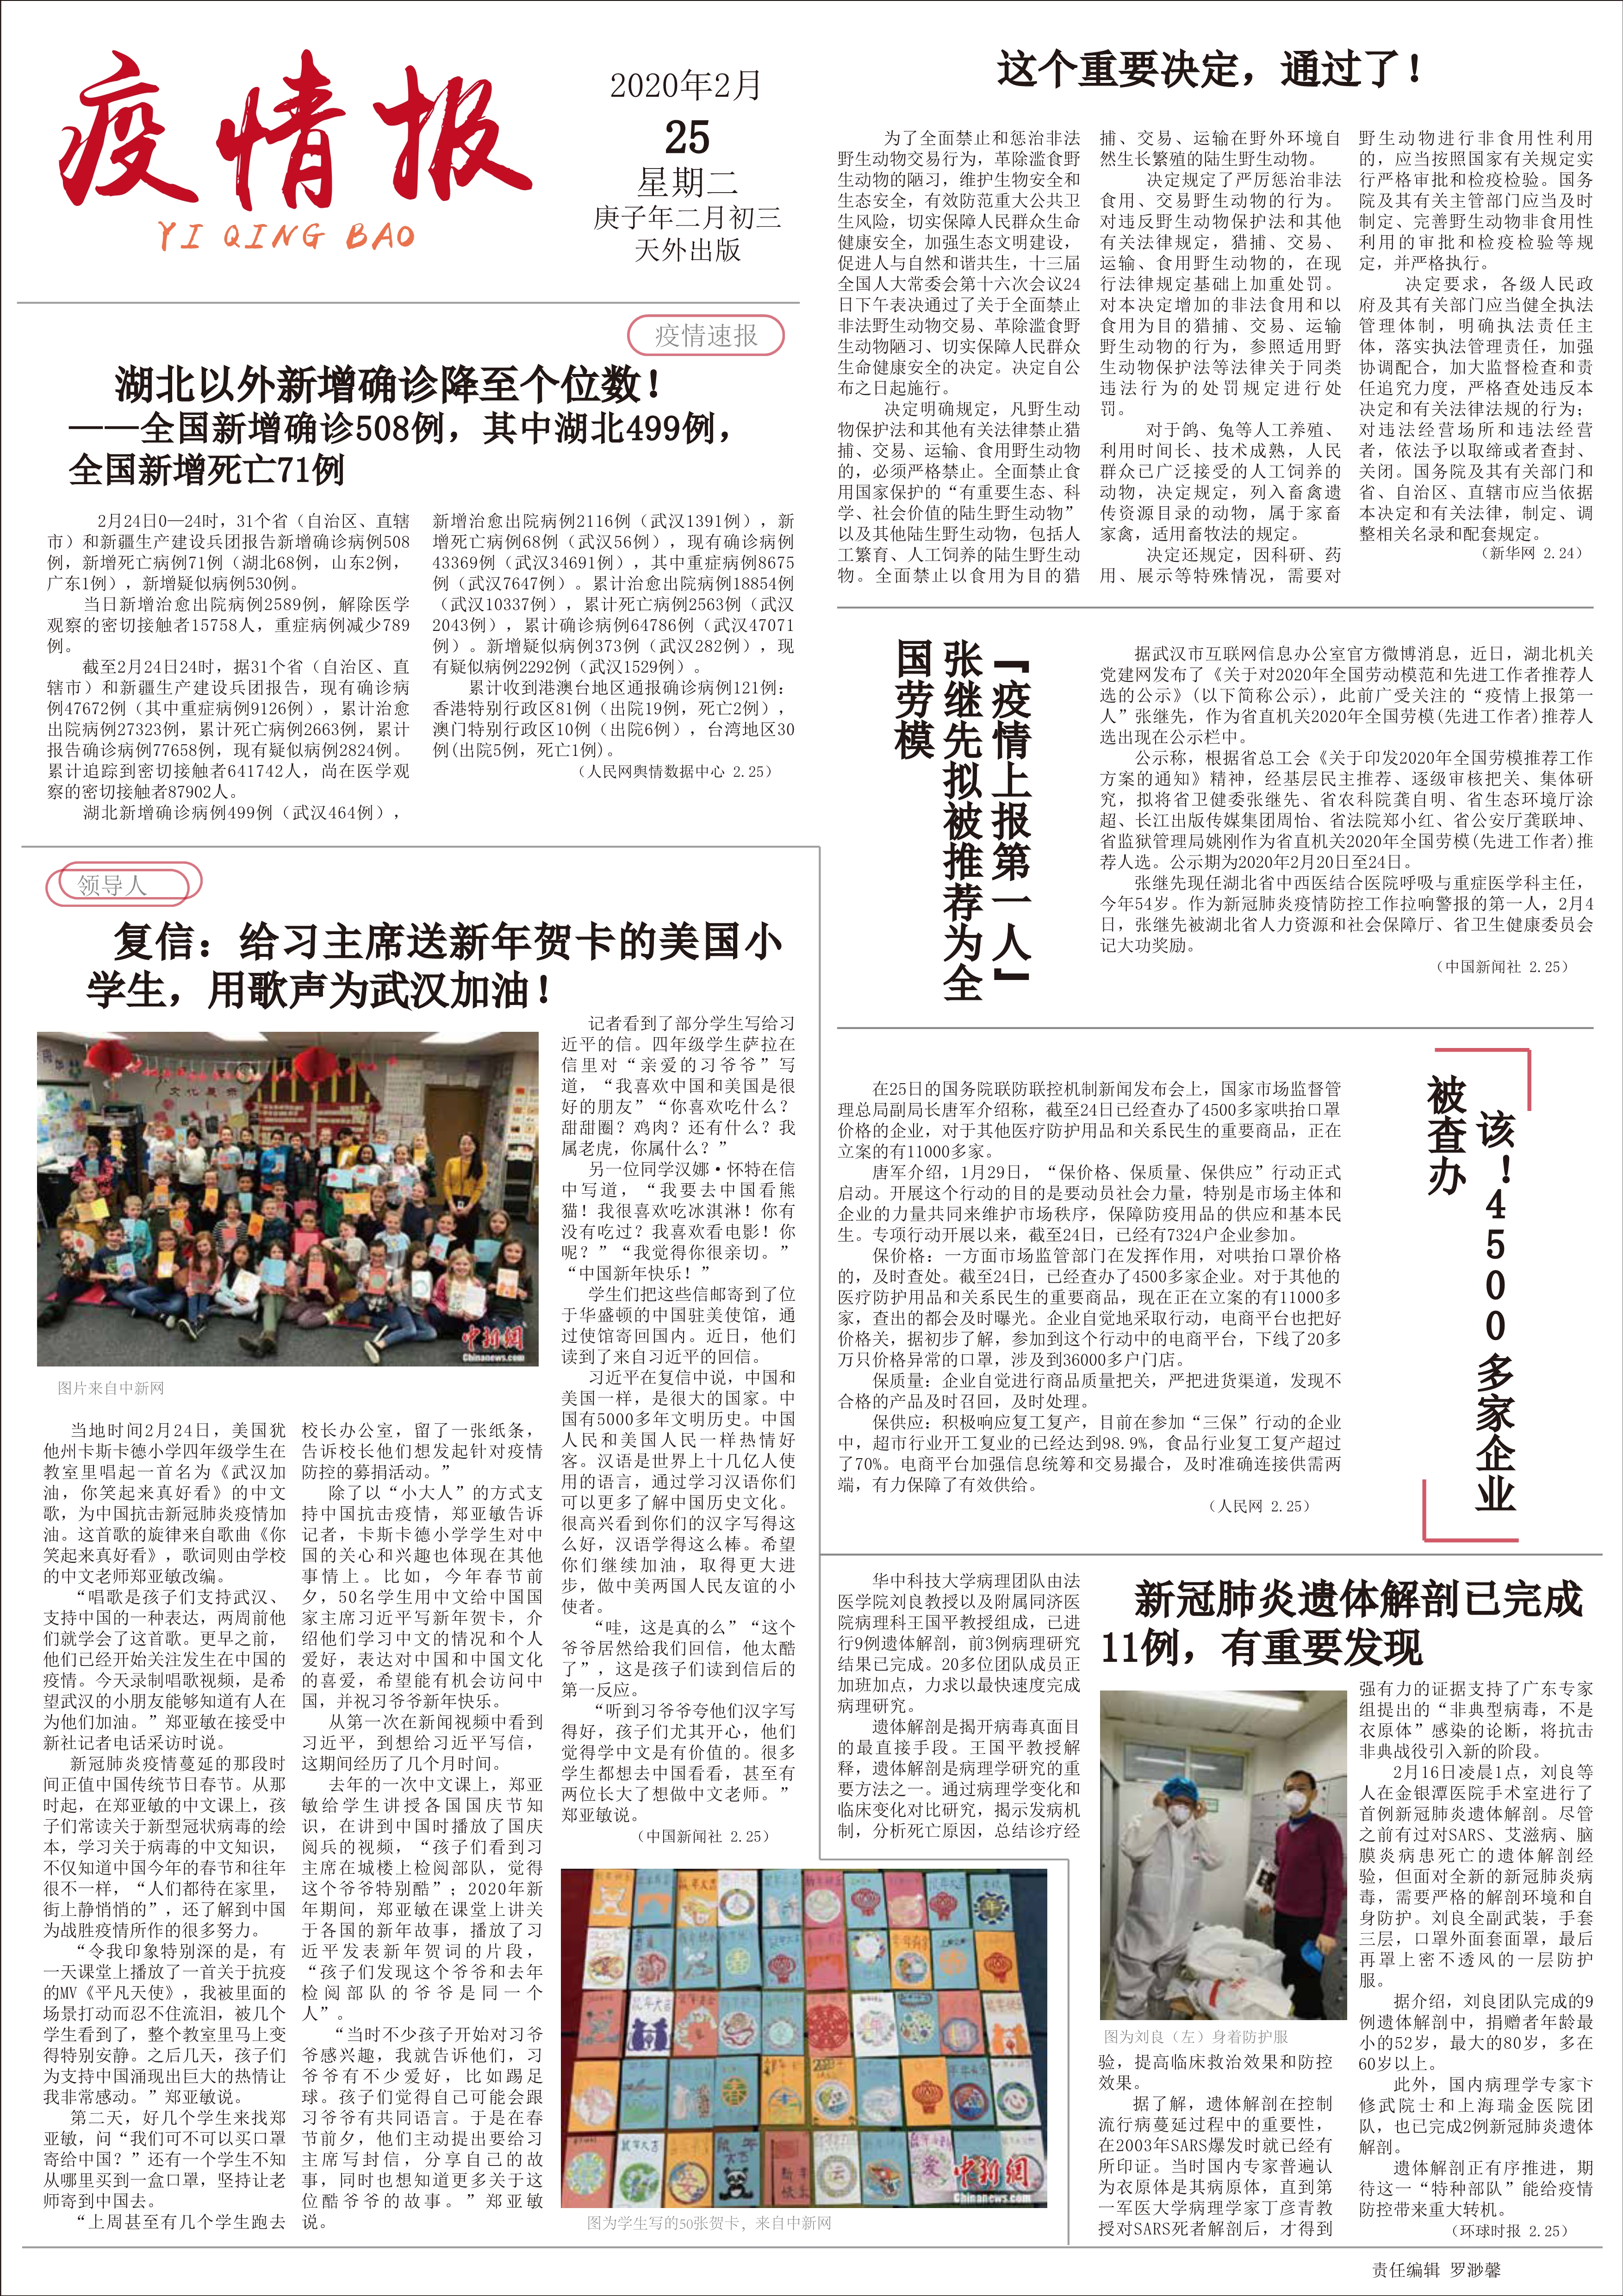 首页编者按:自从疫情爆发以来,天津外国语大学国际传媒学院新闻传播